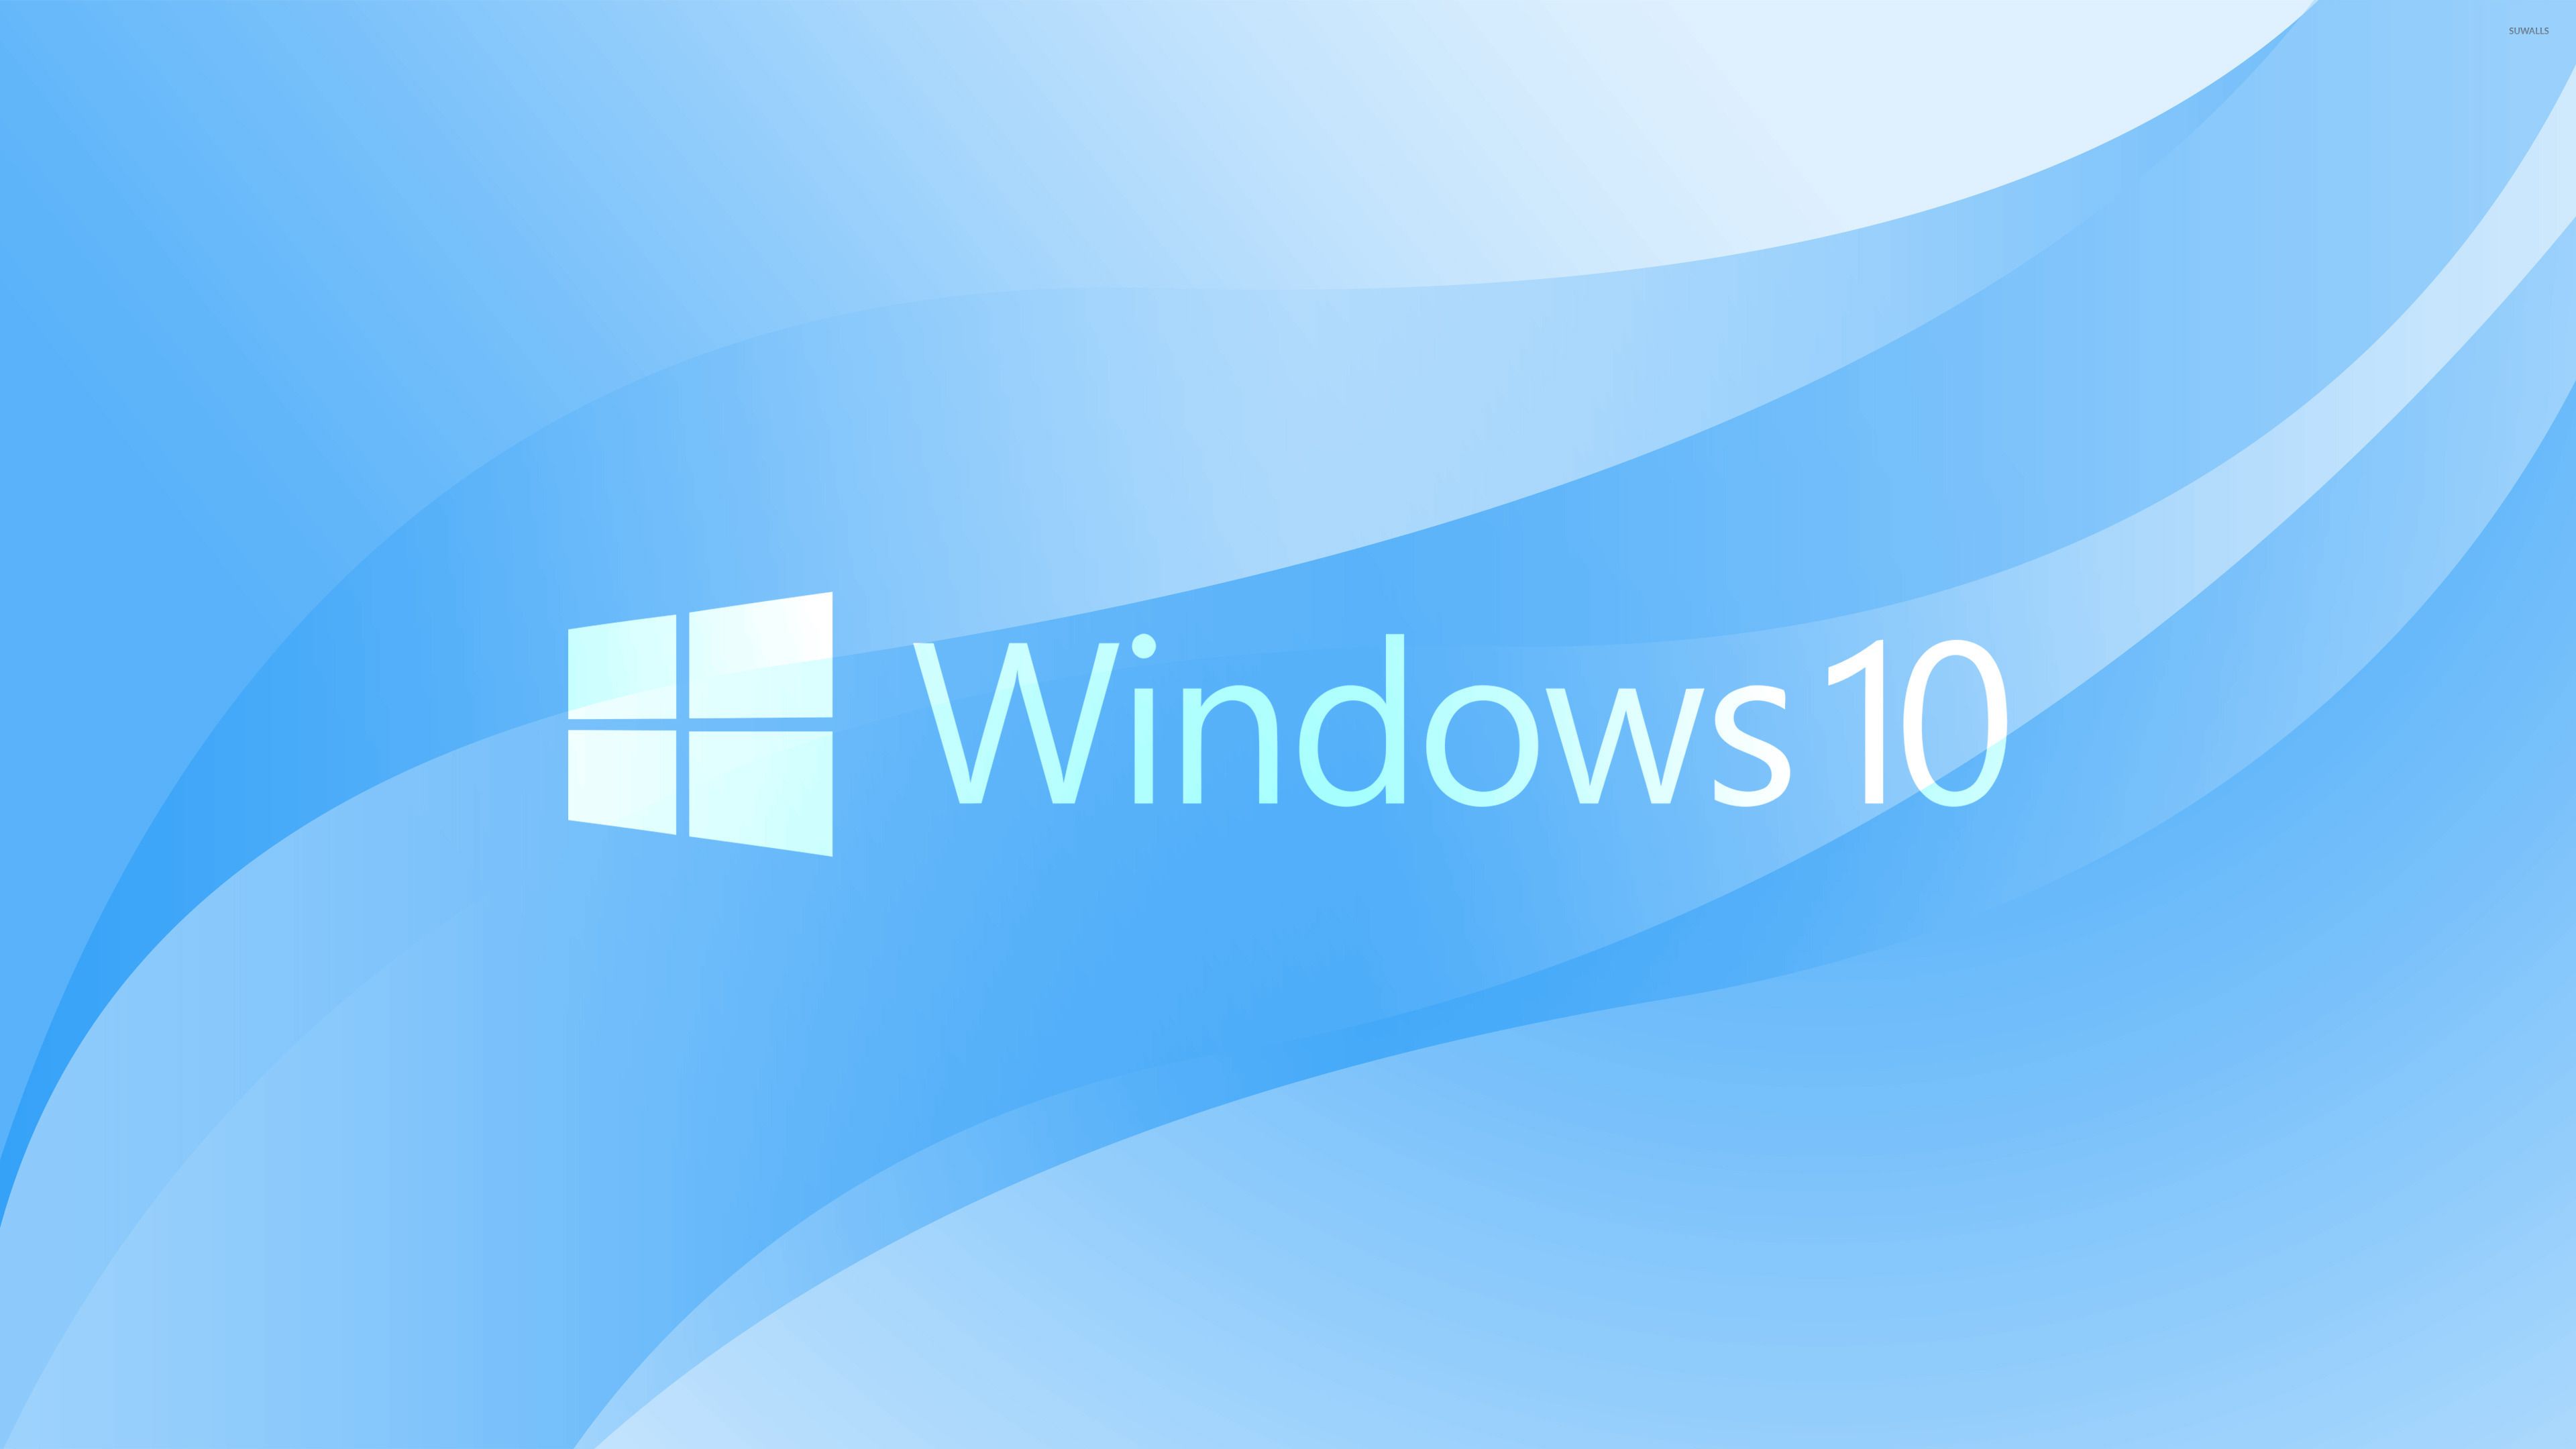 Logotipo de texto blanco de Windows 10 sobre fondo azul claro - Computadora